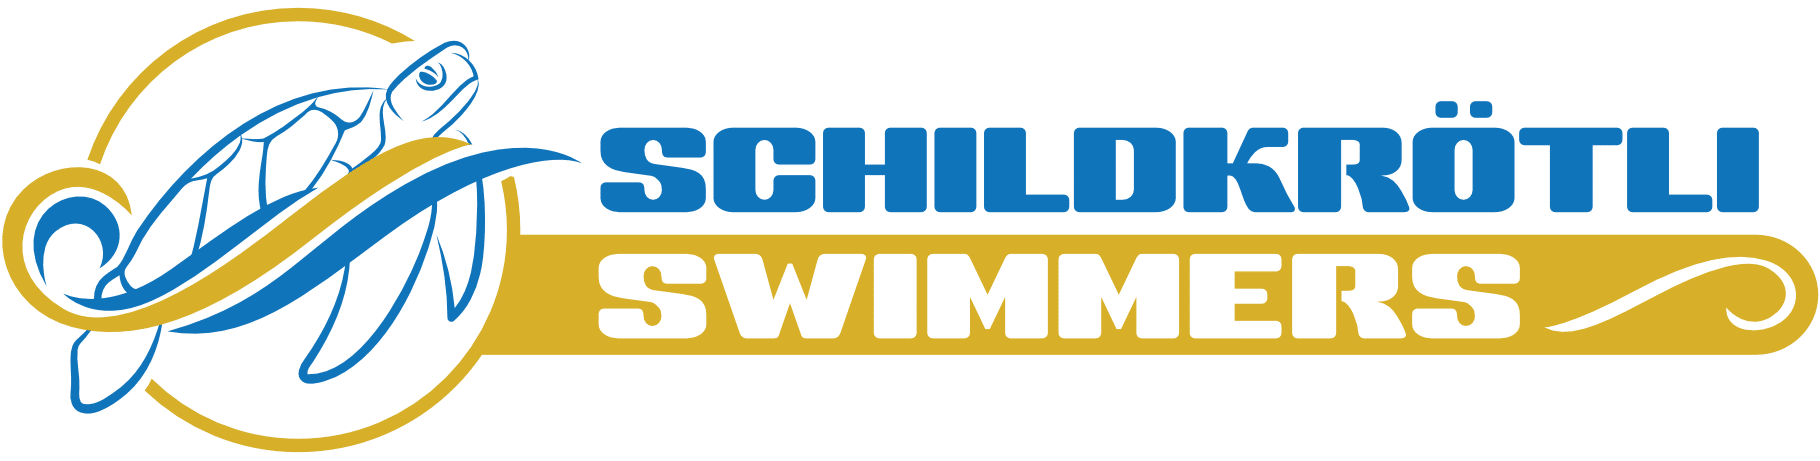 Schildkrötli Swimmers